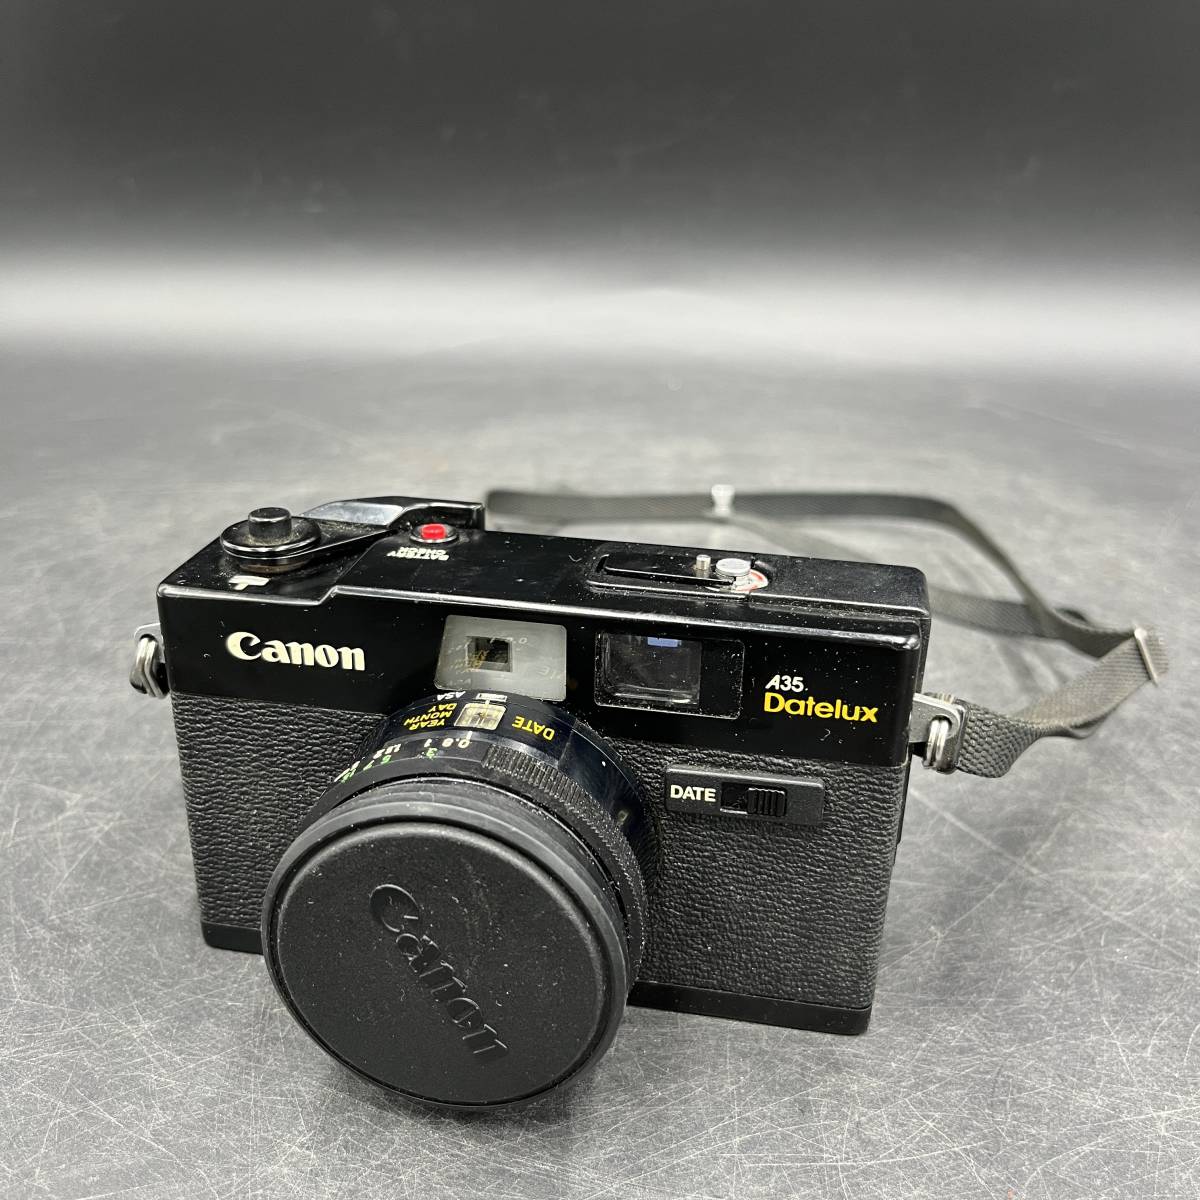 ヤフオク! -「canon a35 datelux」(コンパクトカメラ) (フィルムカメラ 